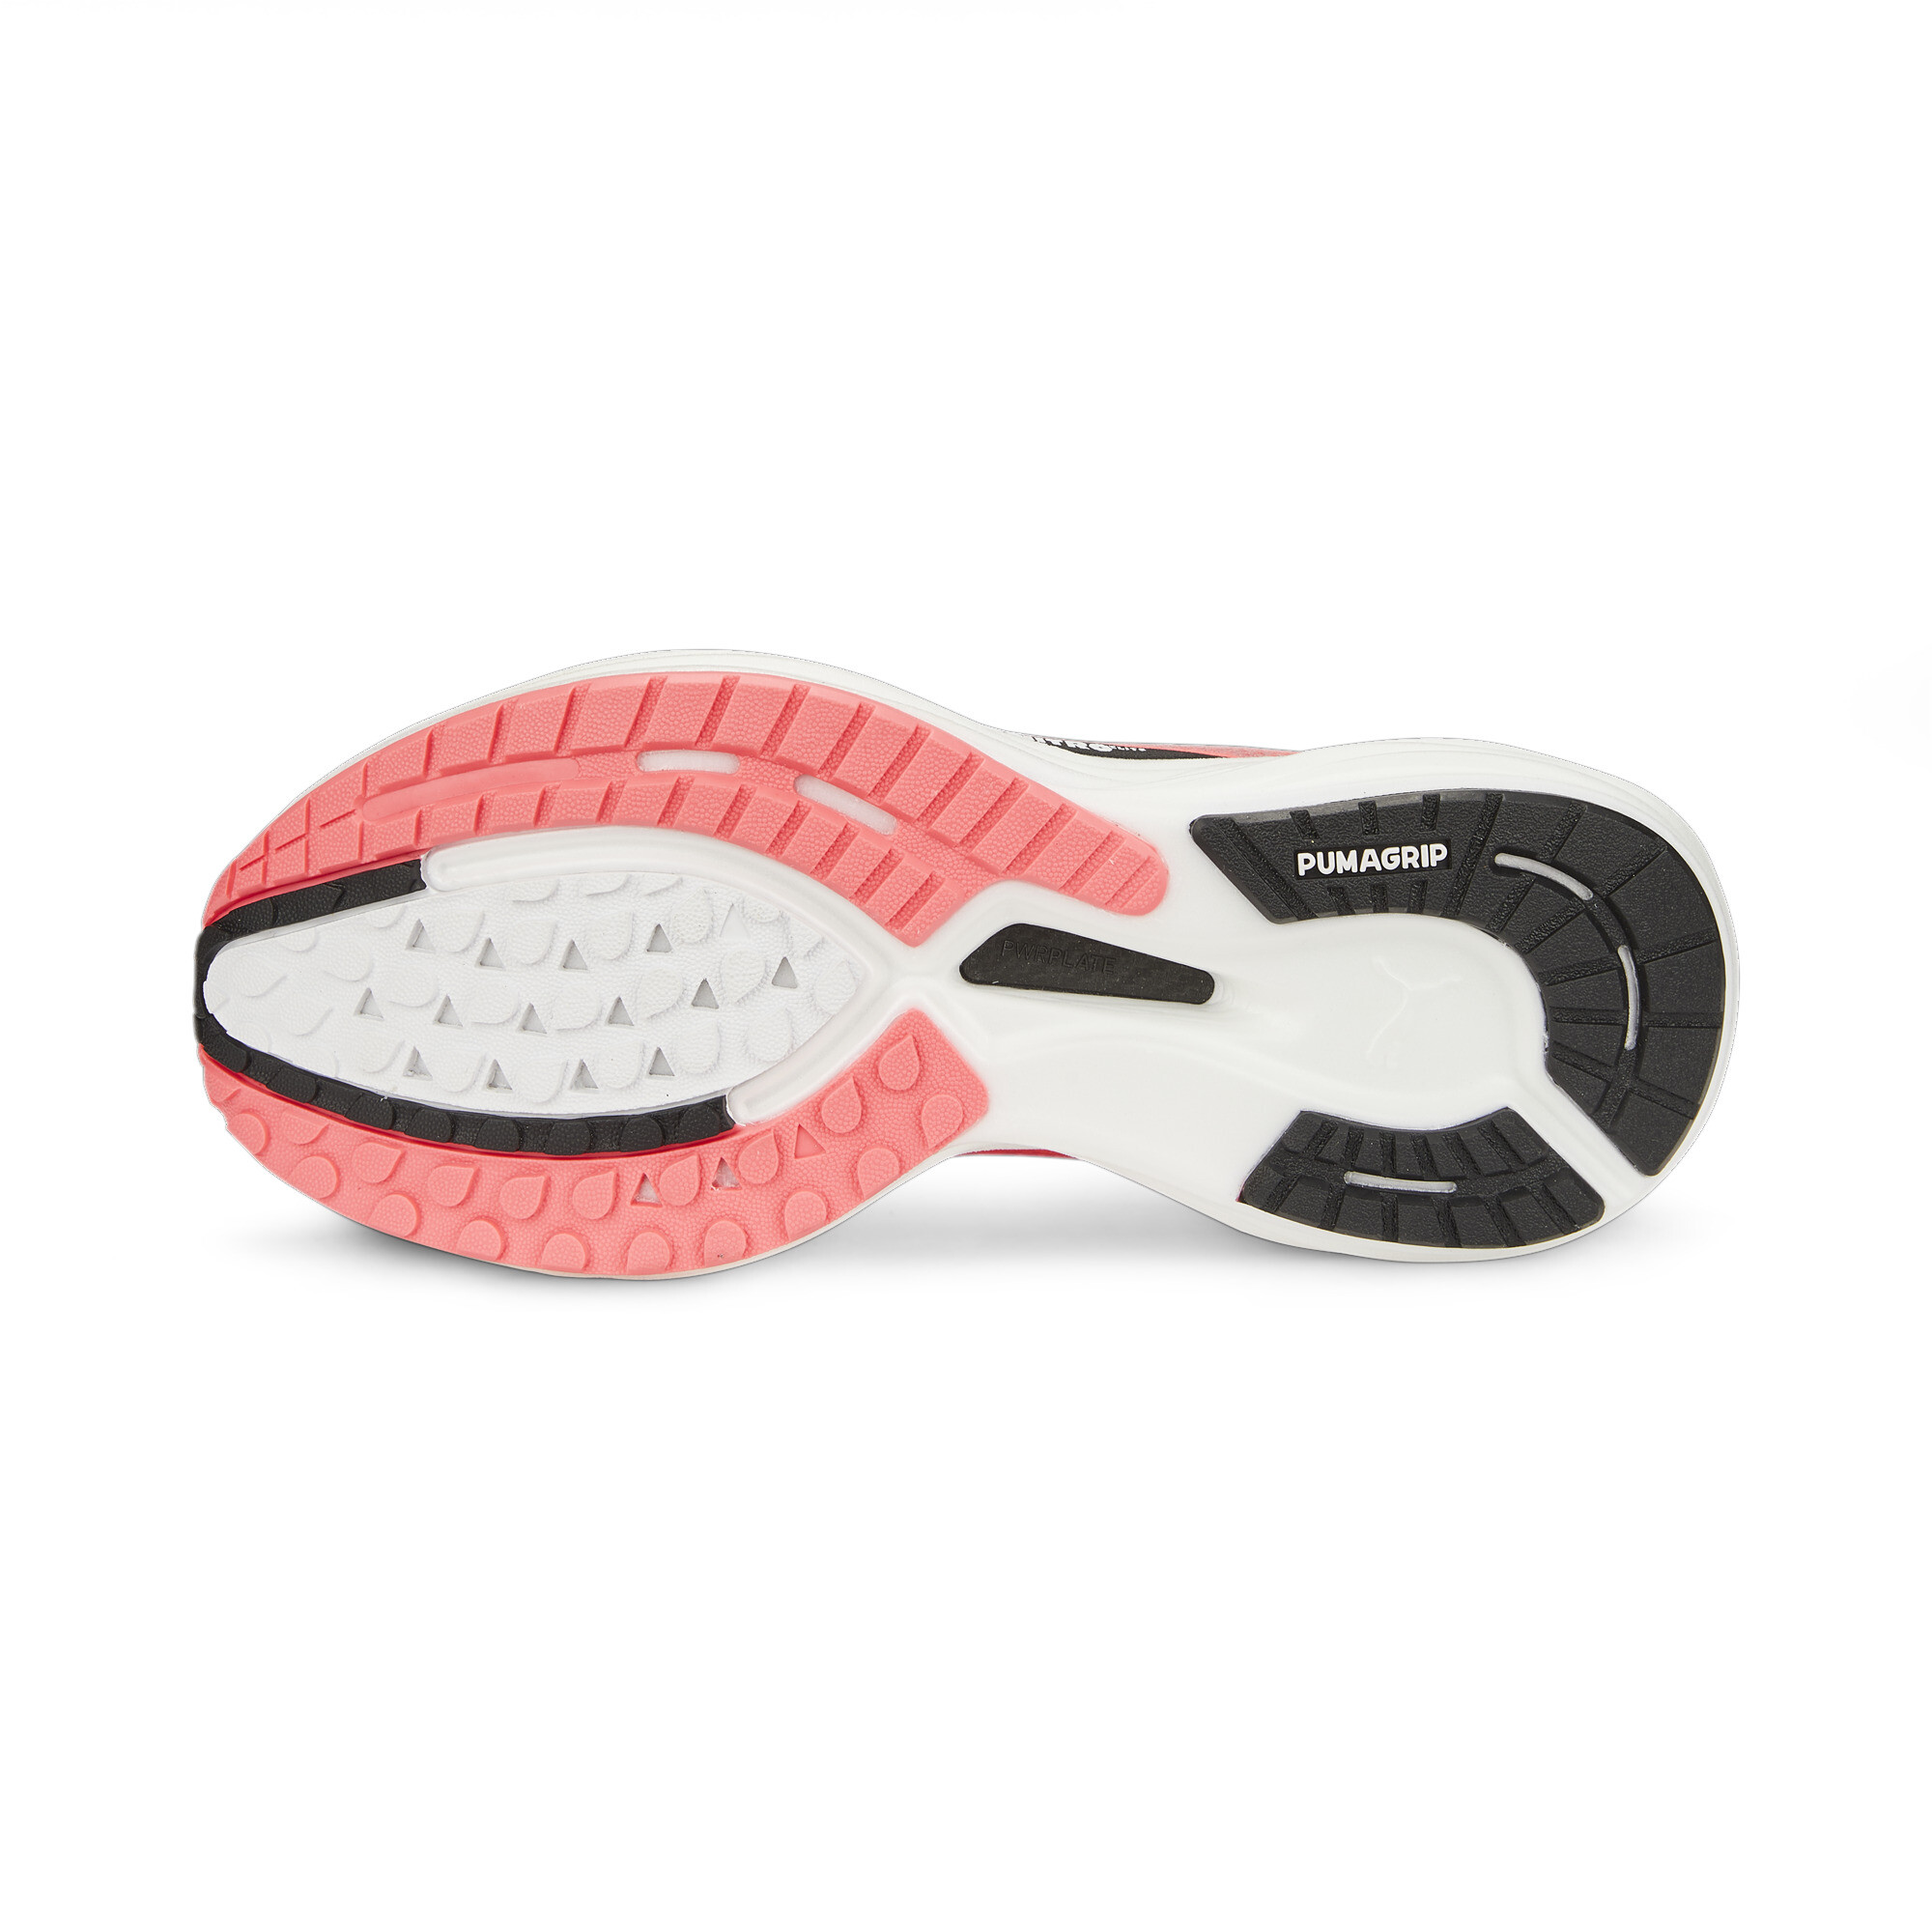 Women's PUMA Deviate NITROâ¢ 2 Running Shoes In Pink, Size EU 37